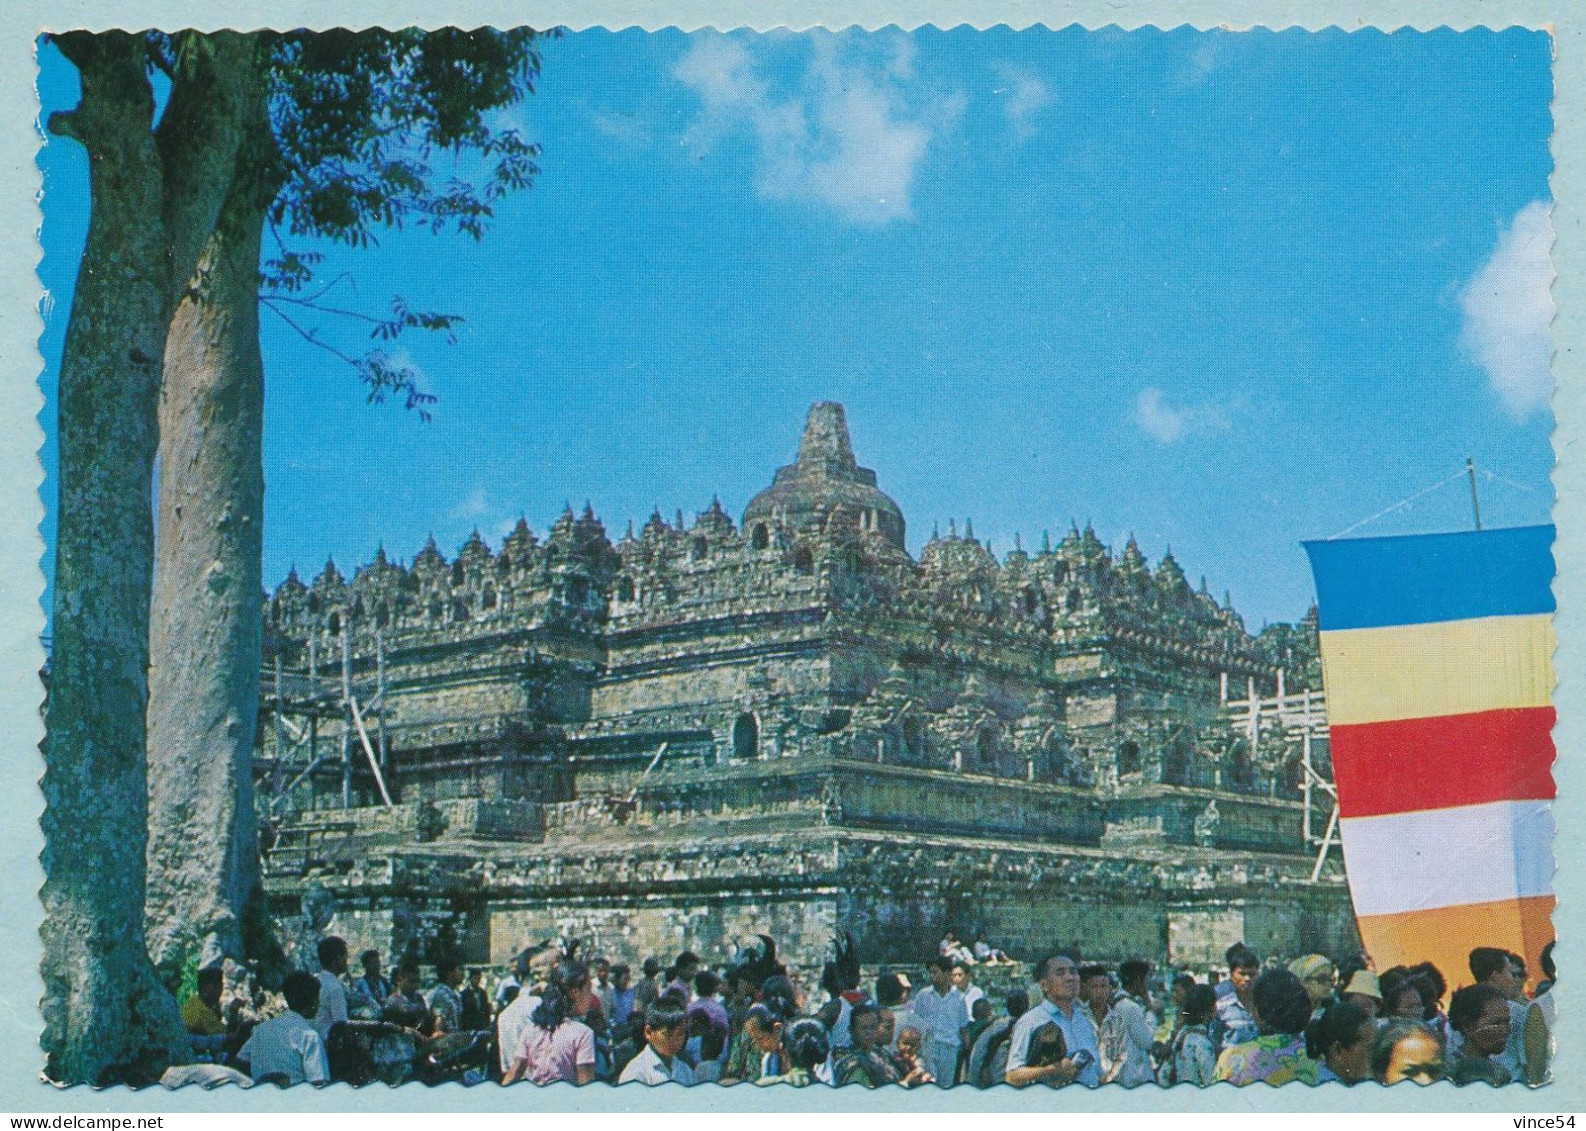 Borobudur Temple During Its Annual Ceremony - Indonesia